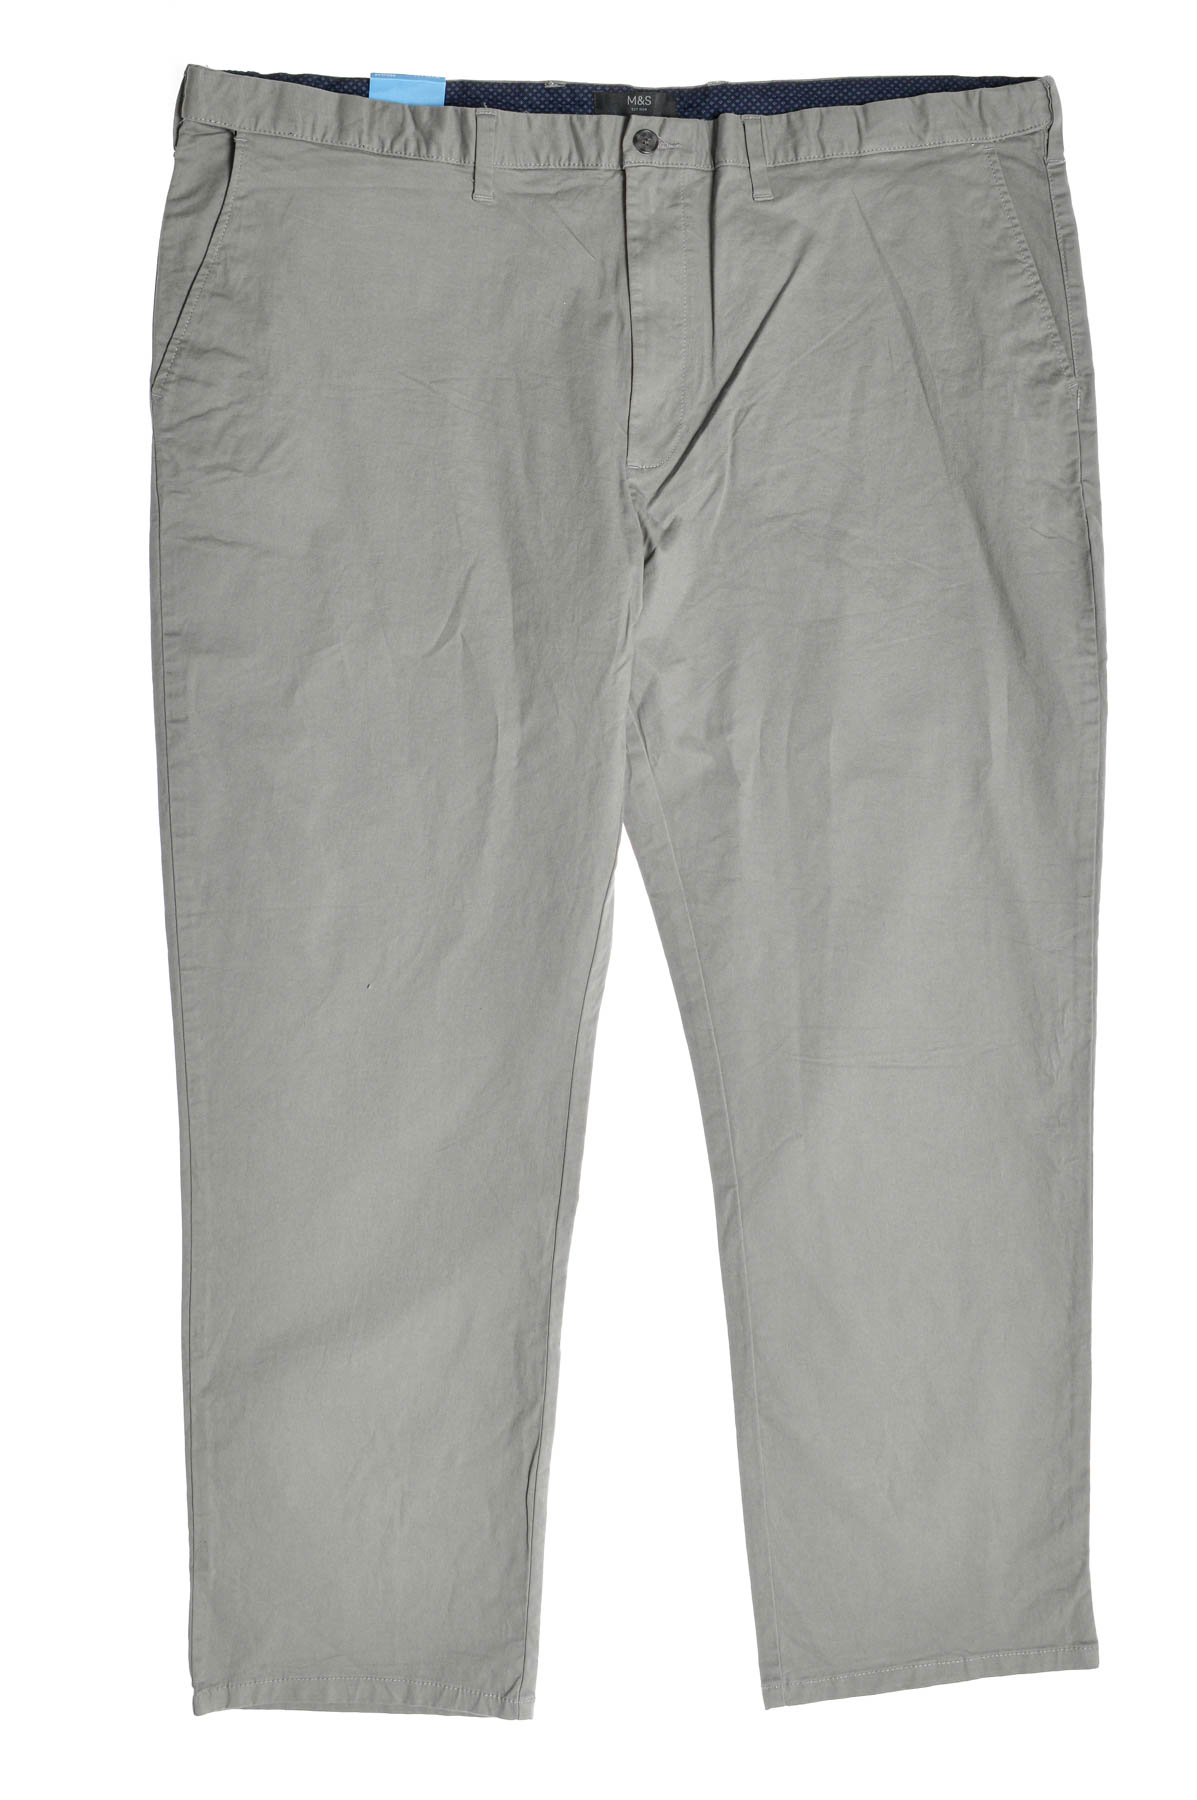 Men's trousers - M&S - 0